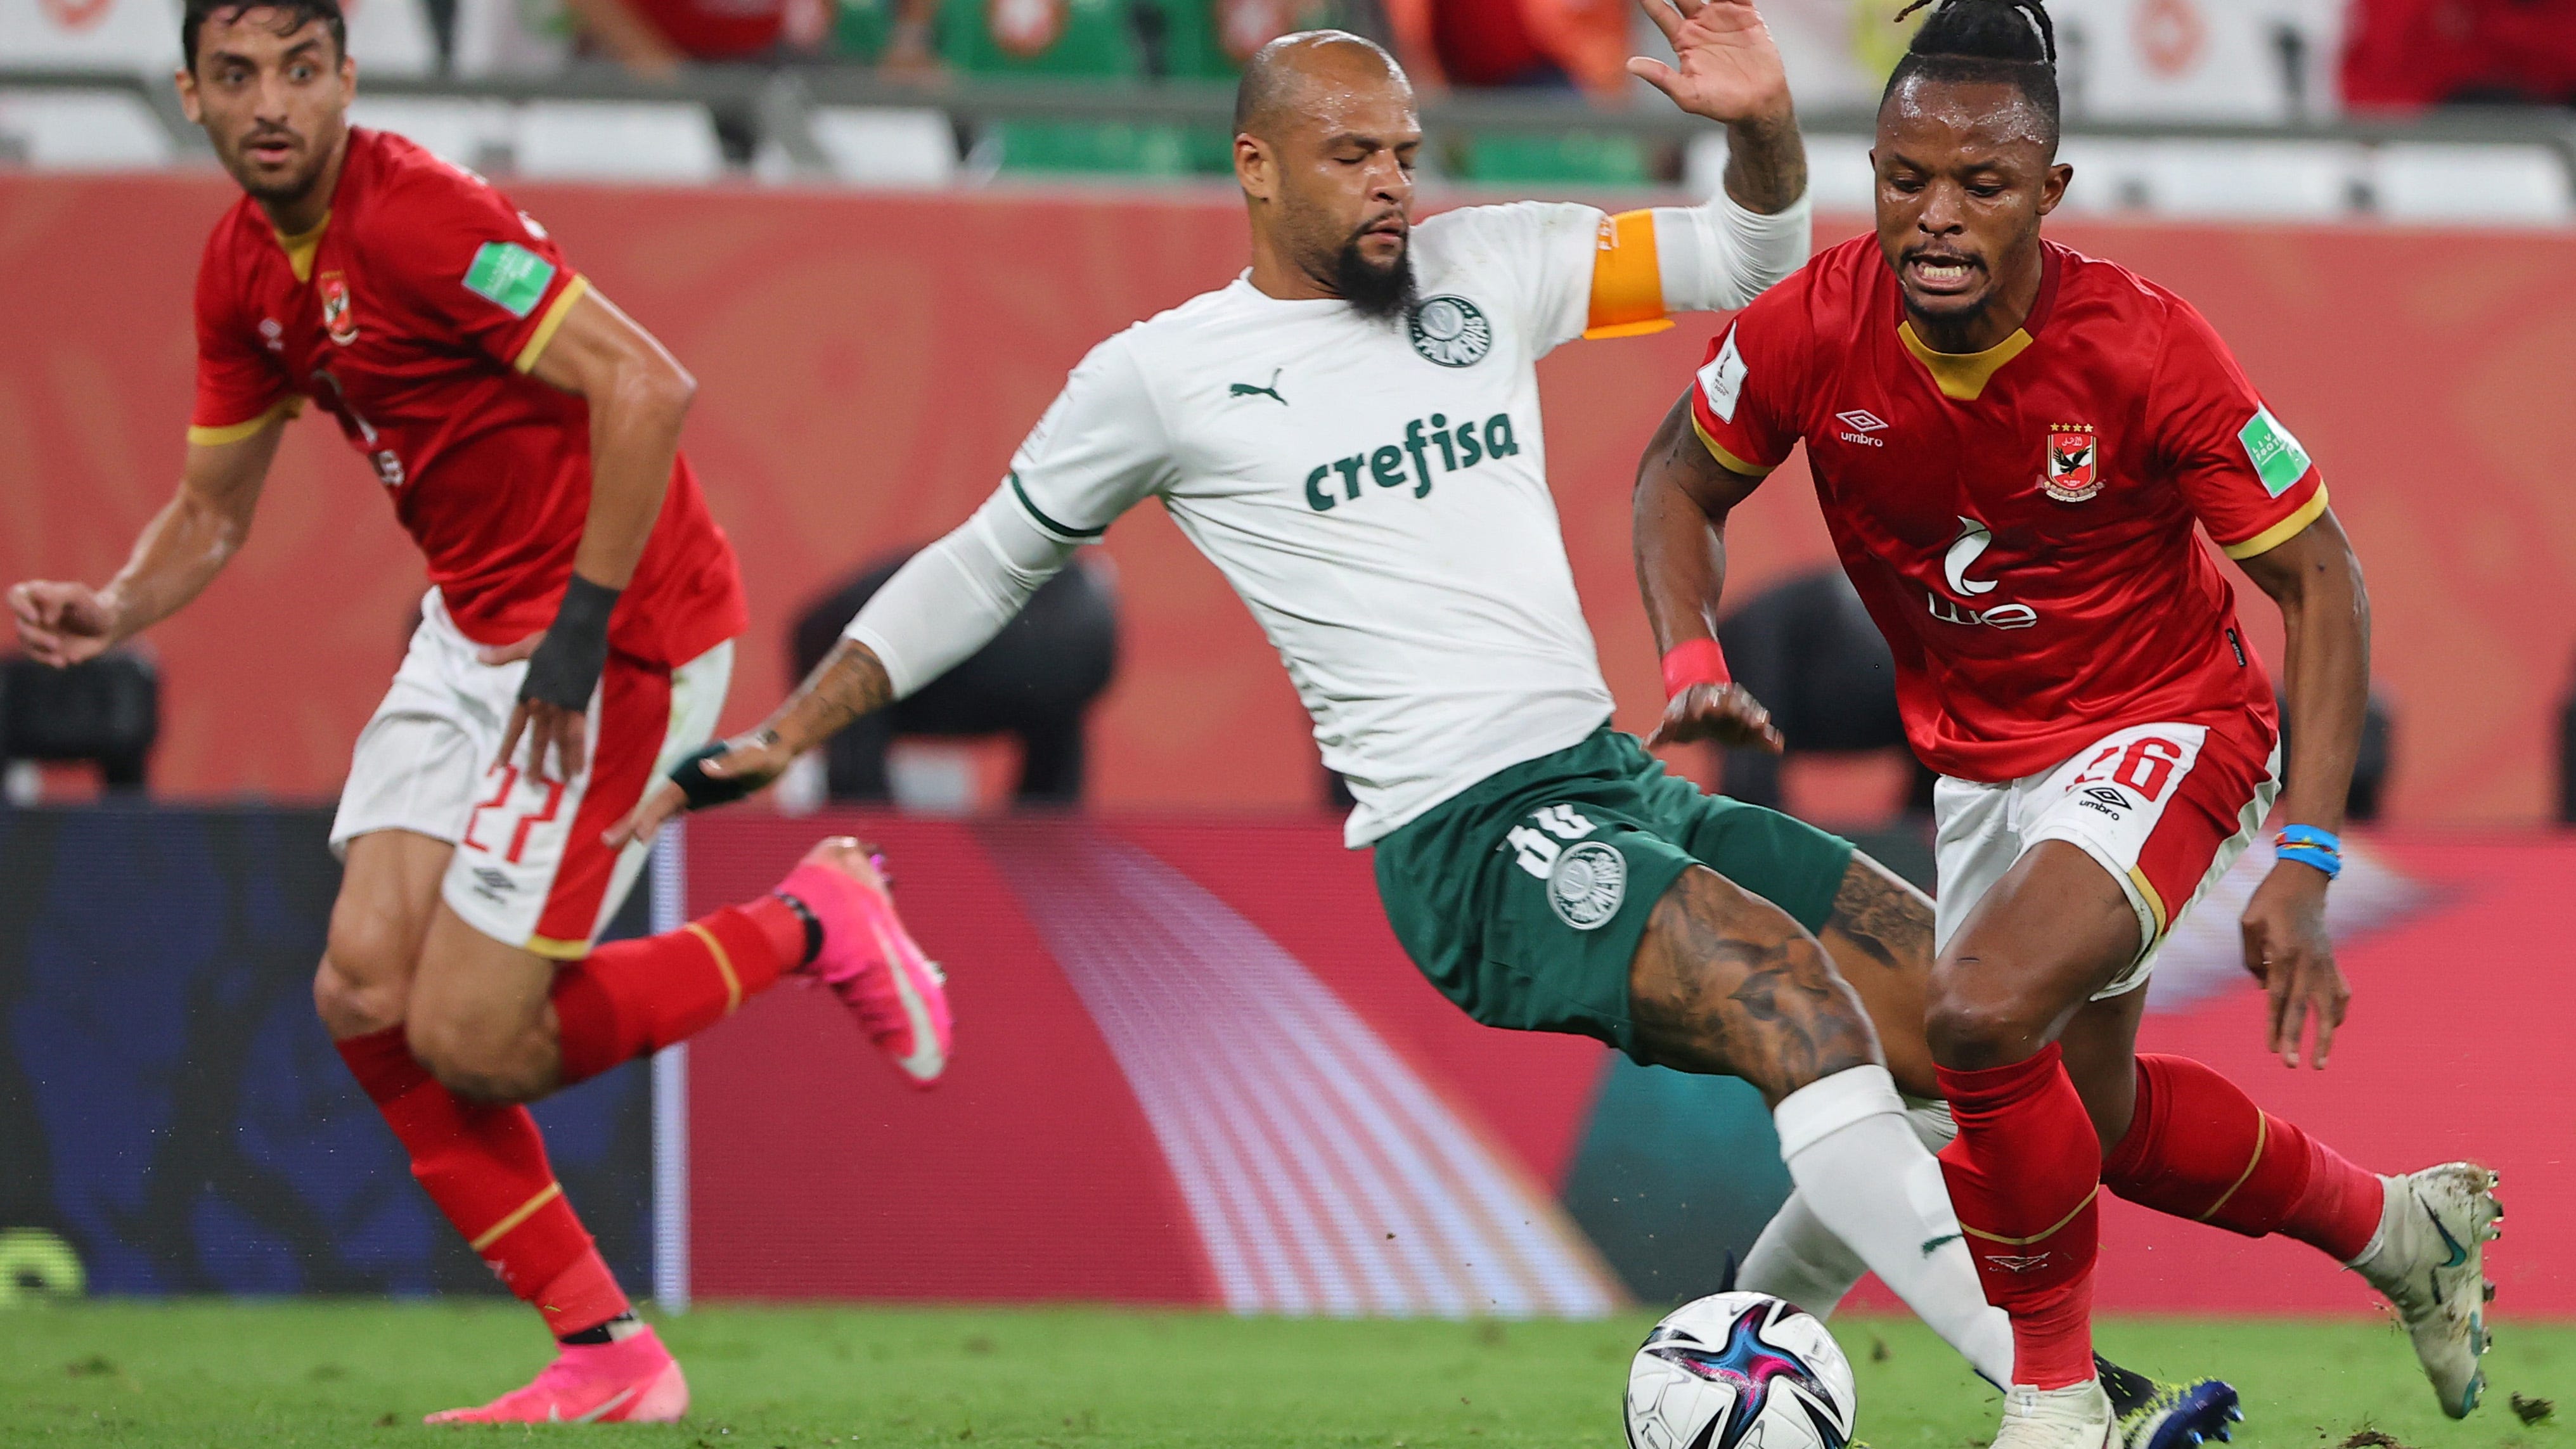 Mundial: Palmeiras decepciona e perde terceiro lugar para Al Ahly •  PortalR3 • Criando Opiniões